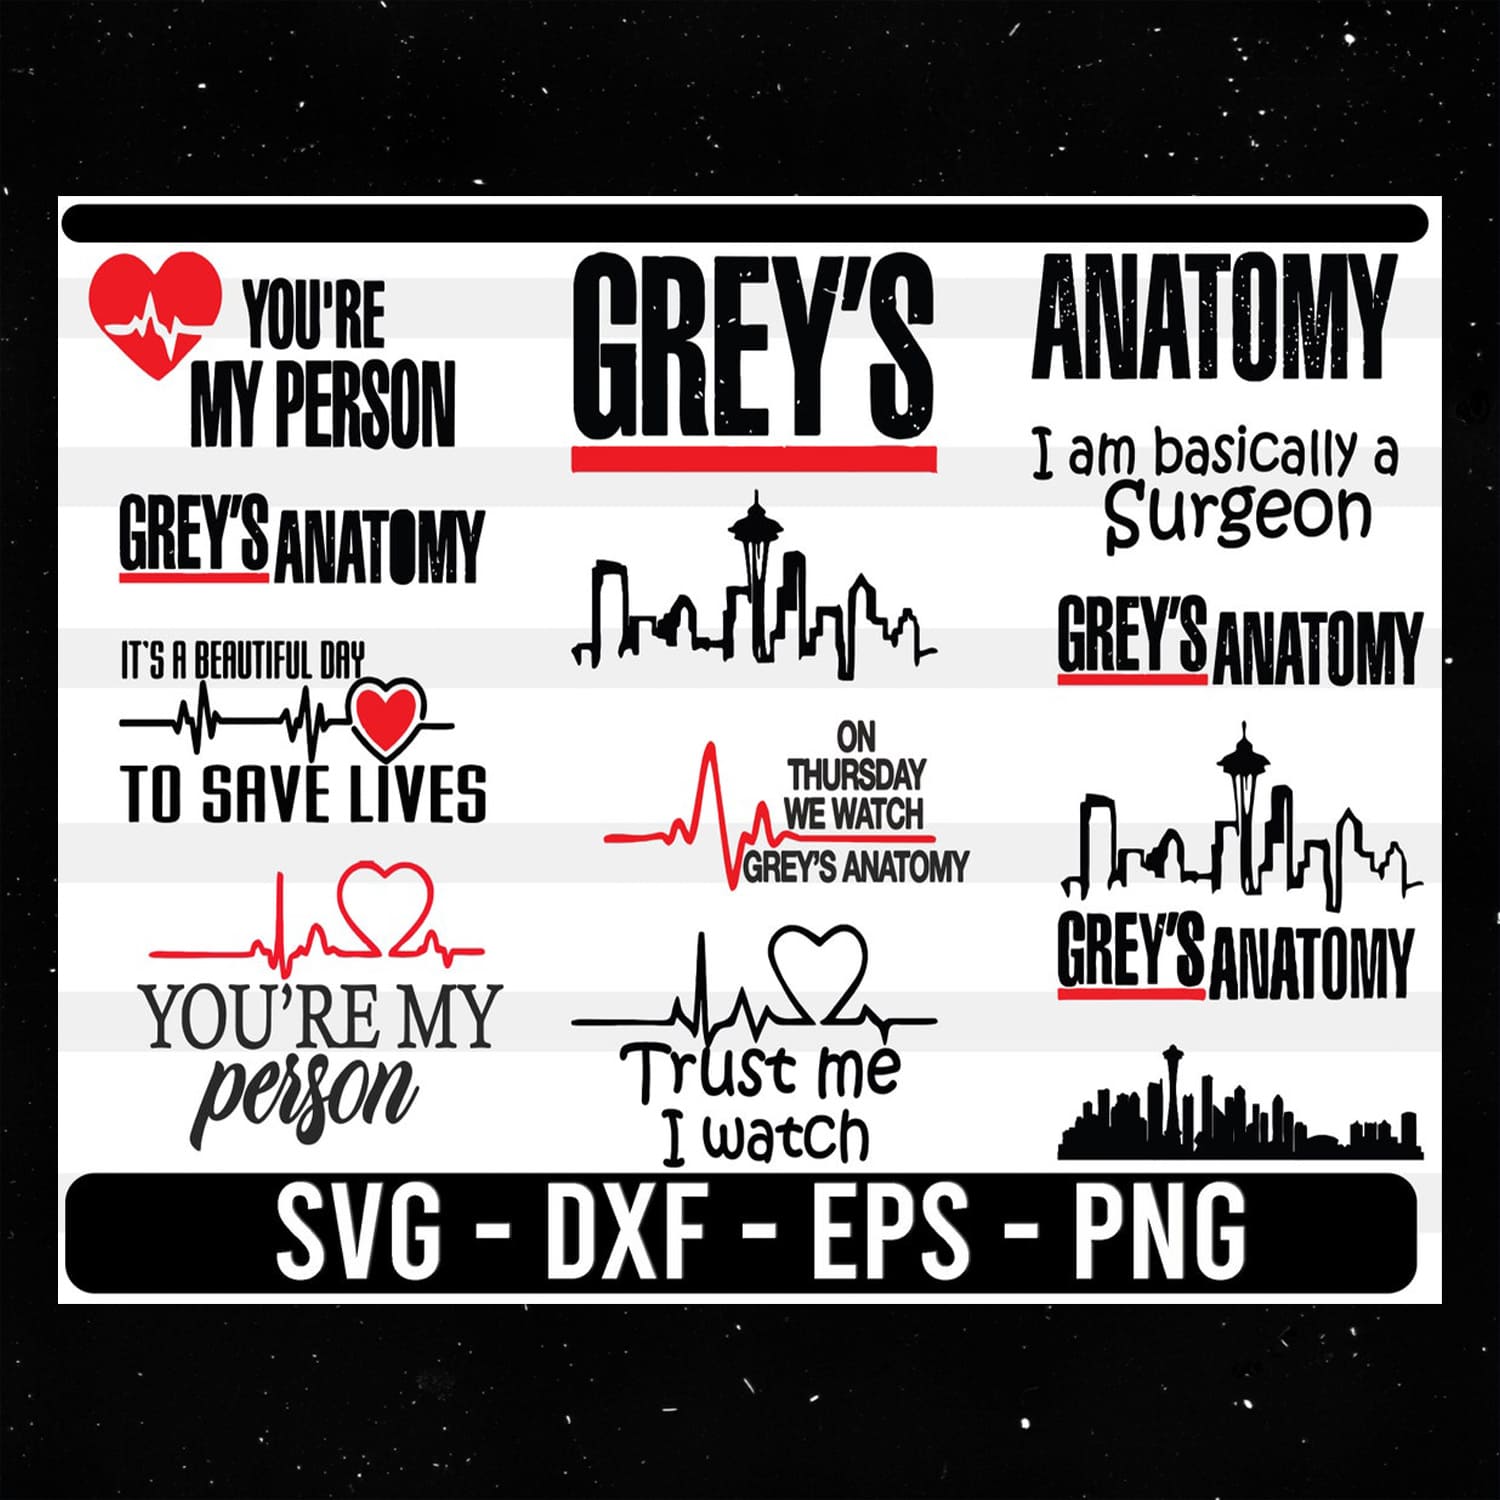 Greys Anatomy SVG.